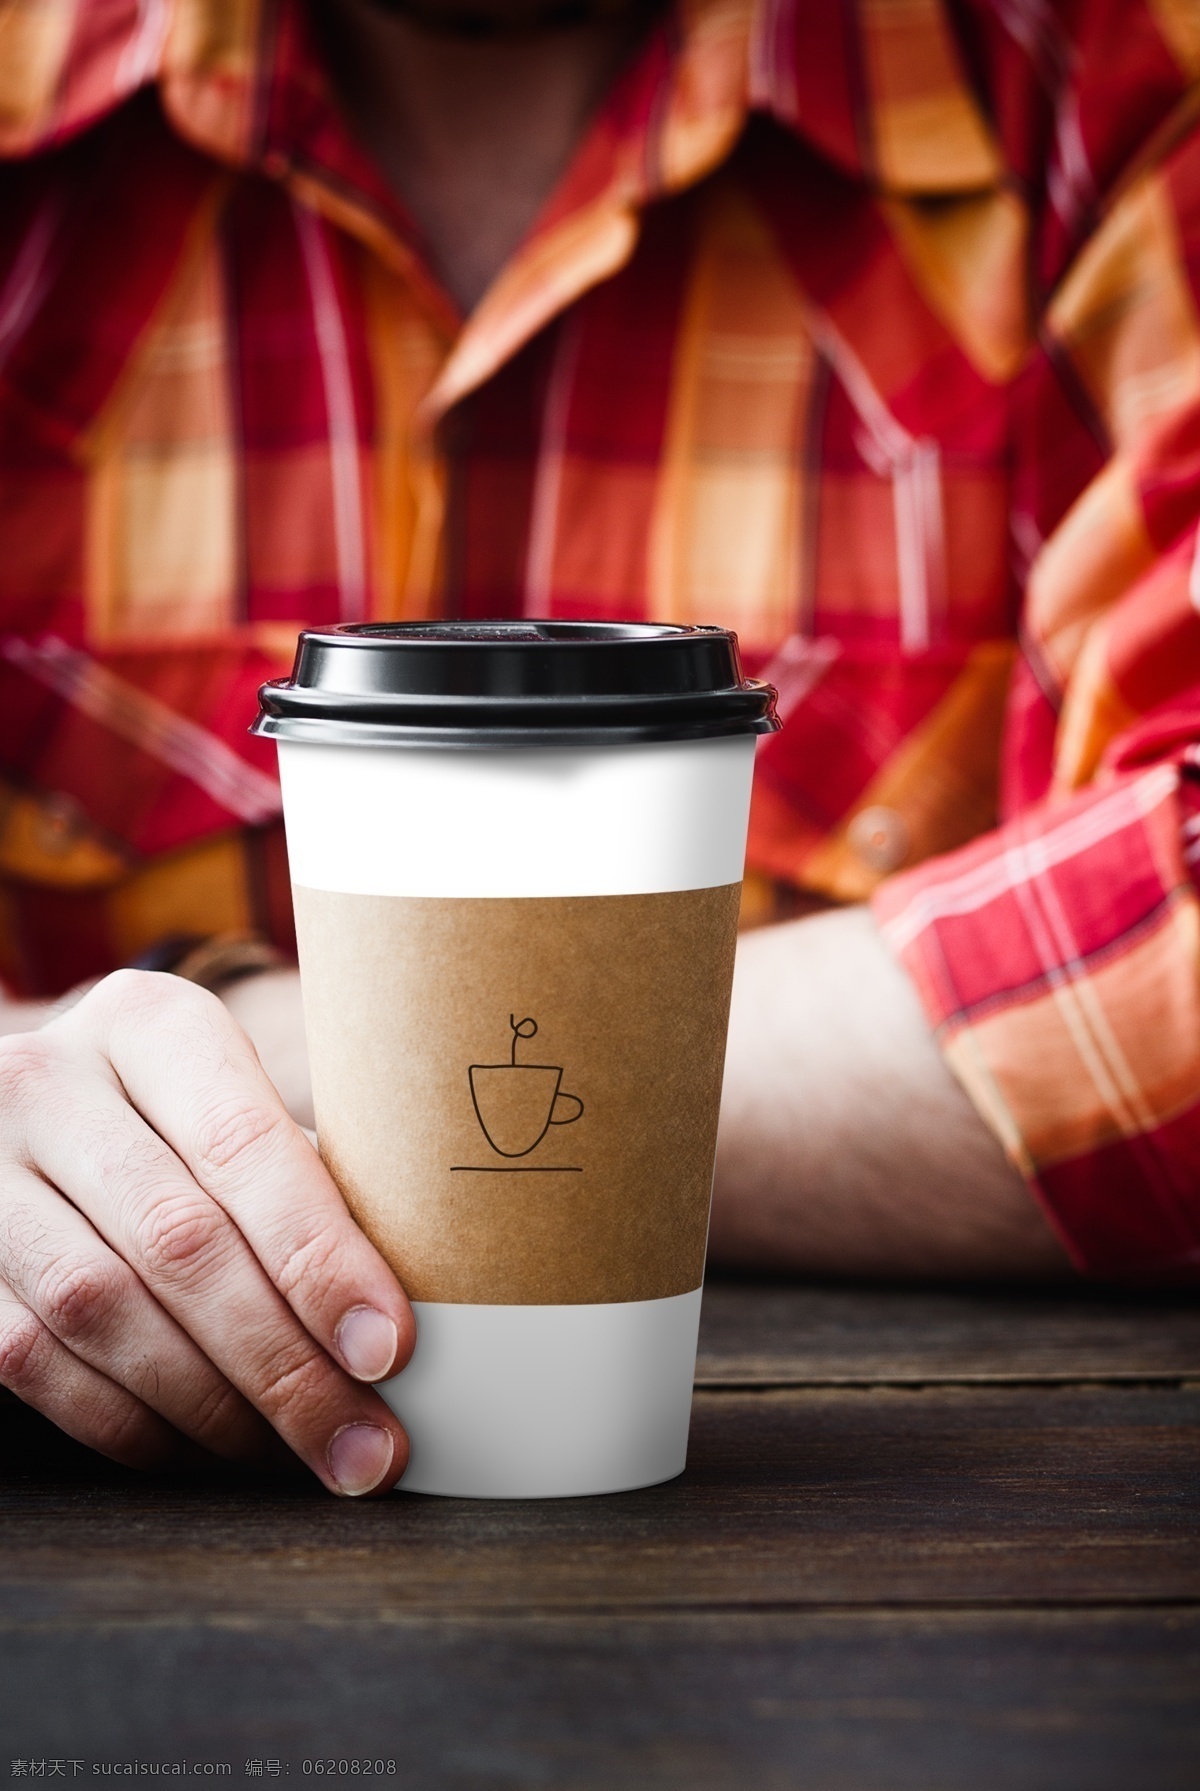 咖啡杯样机 咖啡杯 咖啡纸杯 一次性杯子 咖啡 咖啡品牌 咖啡包装 vi贴图 智能贴图 印刷 印刷工艺 logo贴图 标志贴图 vi样机 样机标志 ps智能对象 logo模板 logo展示 高档样机 成套 vi 品牌 应用 分层